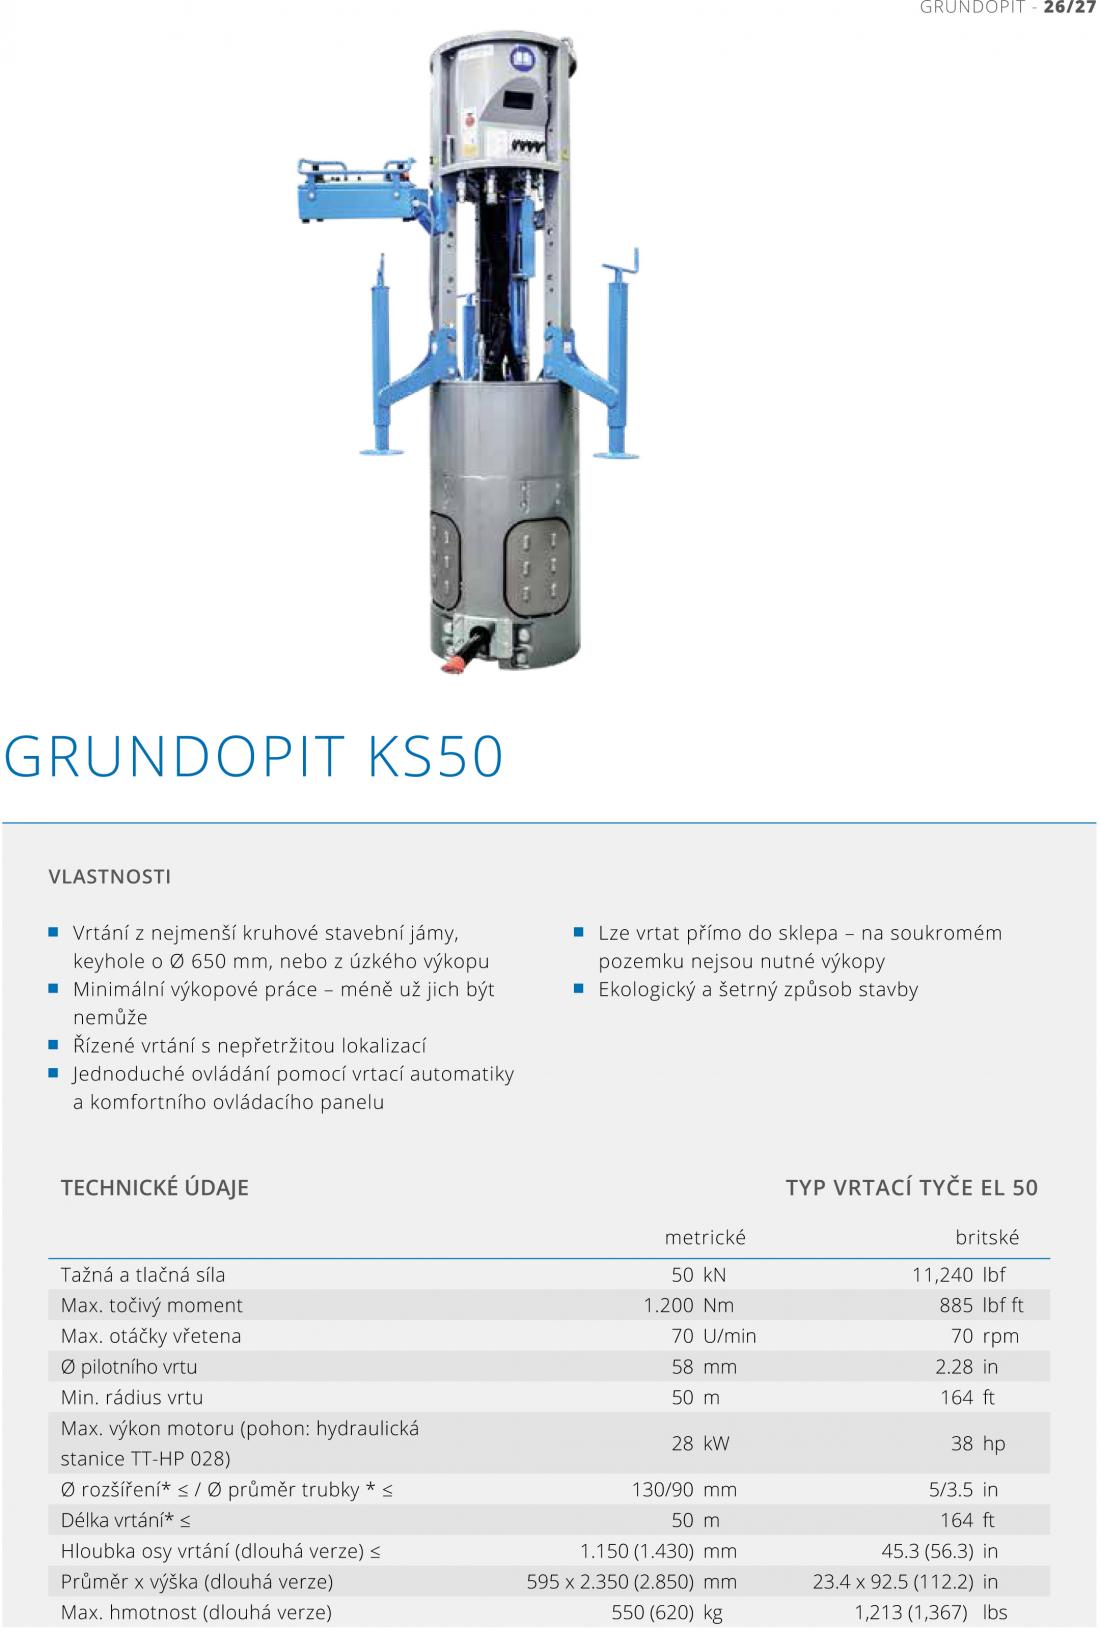 GRUNDOPIT KS50